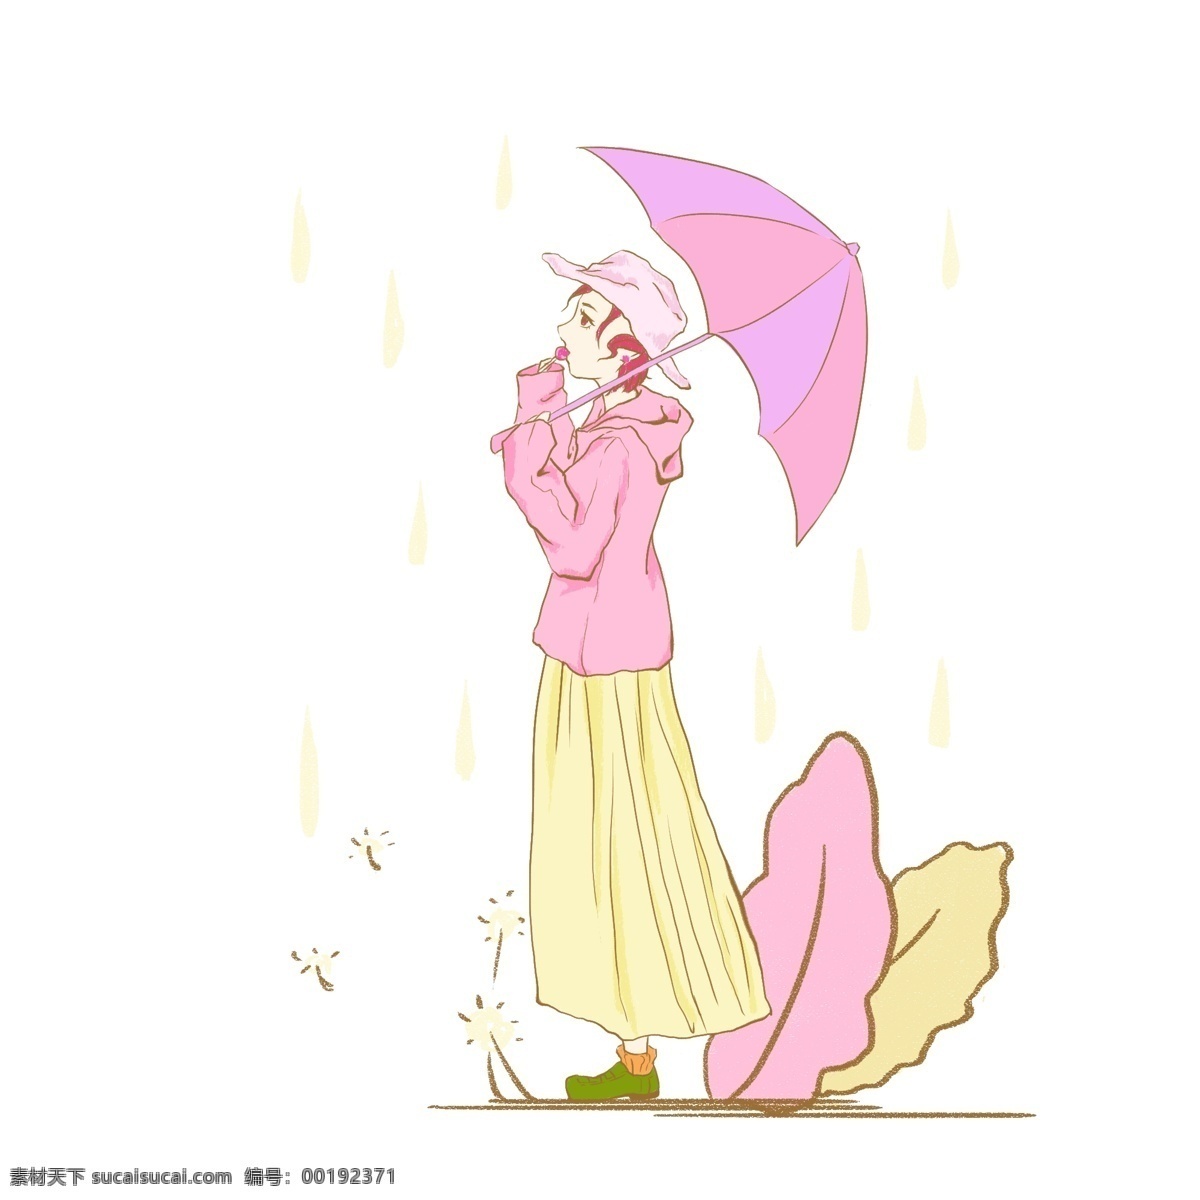 打伞 女孩 下雨 天马 卡龙 色 可爱 马克龙色 小女孩 粉嫩 打伞的人